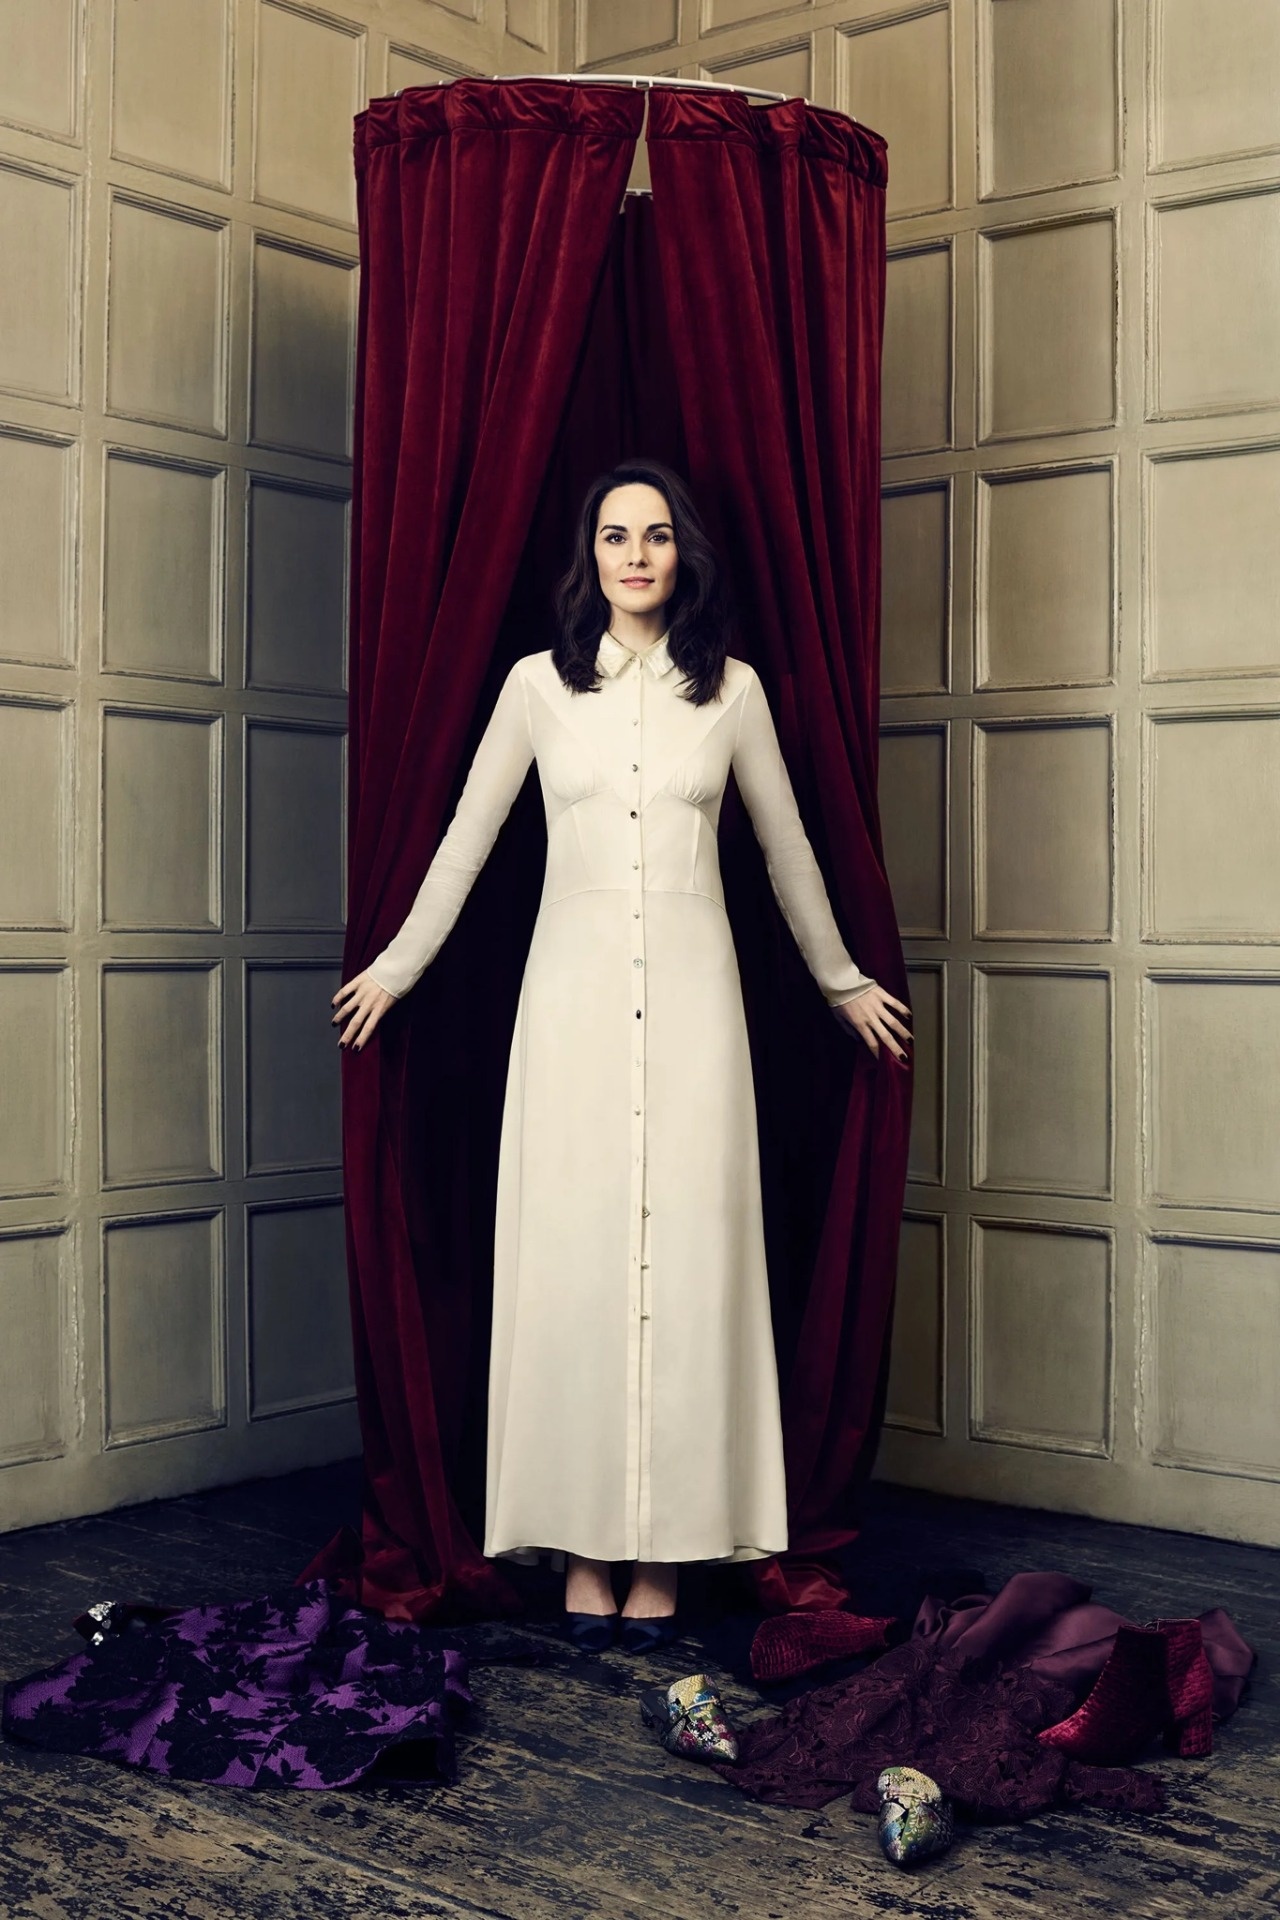 Michelle Dockery: Downton Abbey TV series star, Lady Mary Talbot, Written by Julian Fellowes. 1280x1920 HD Wallpaper.